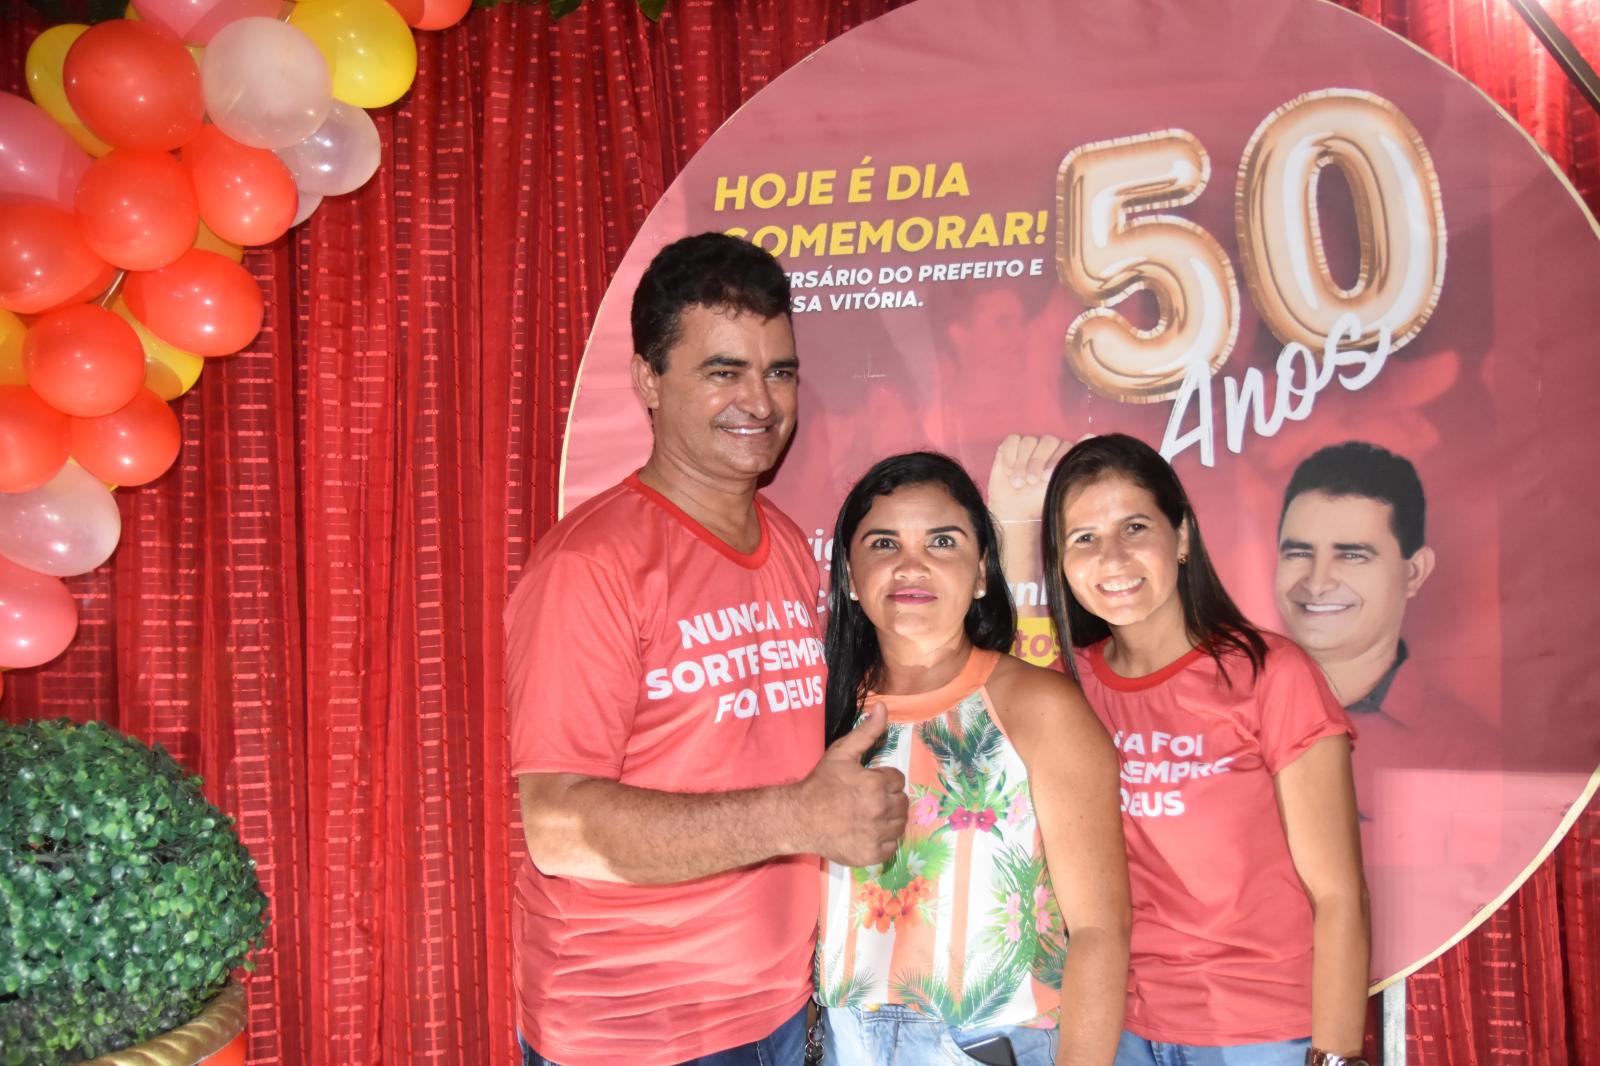 Comemoração da vitória do 65 em Junco do Maranhão foi repleta de emoção